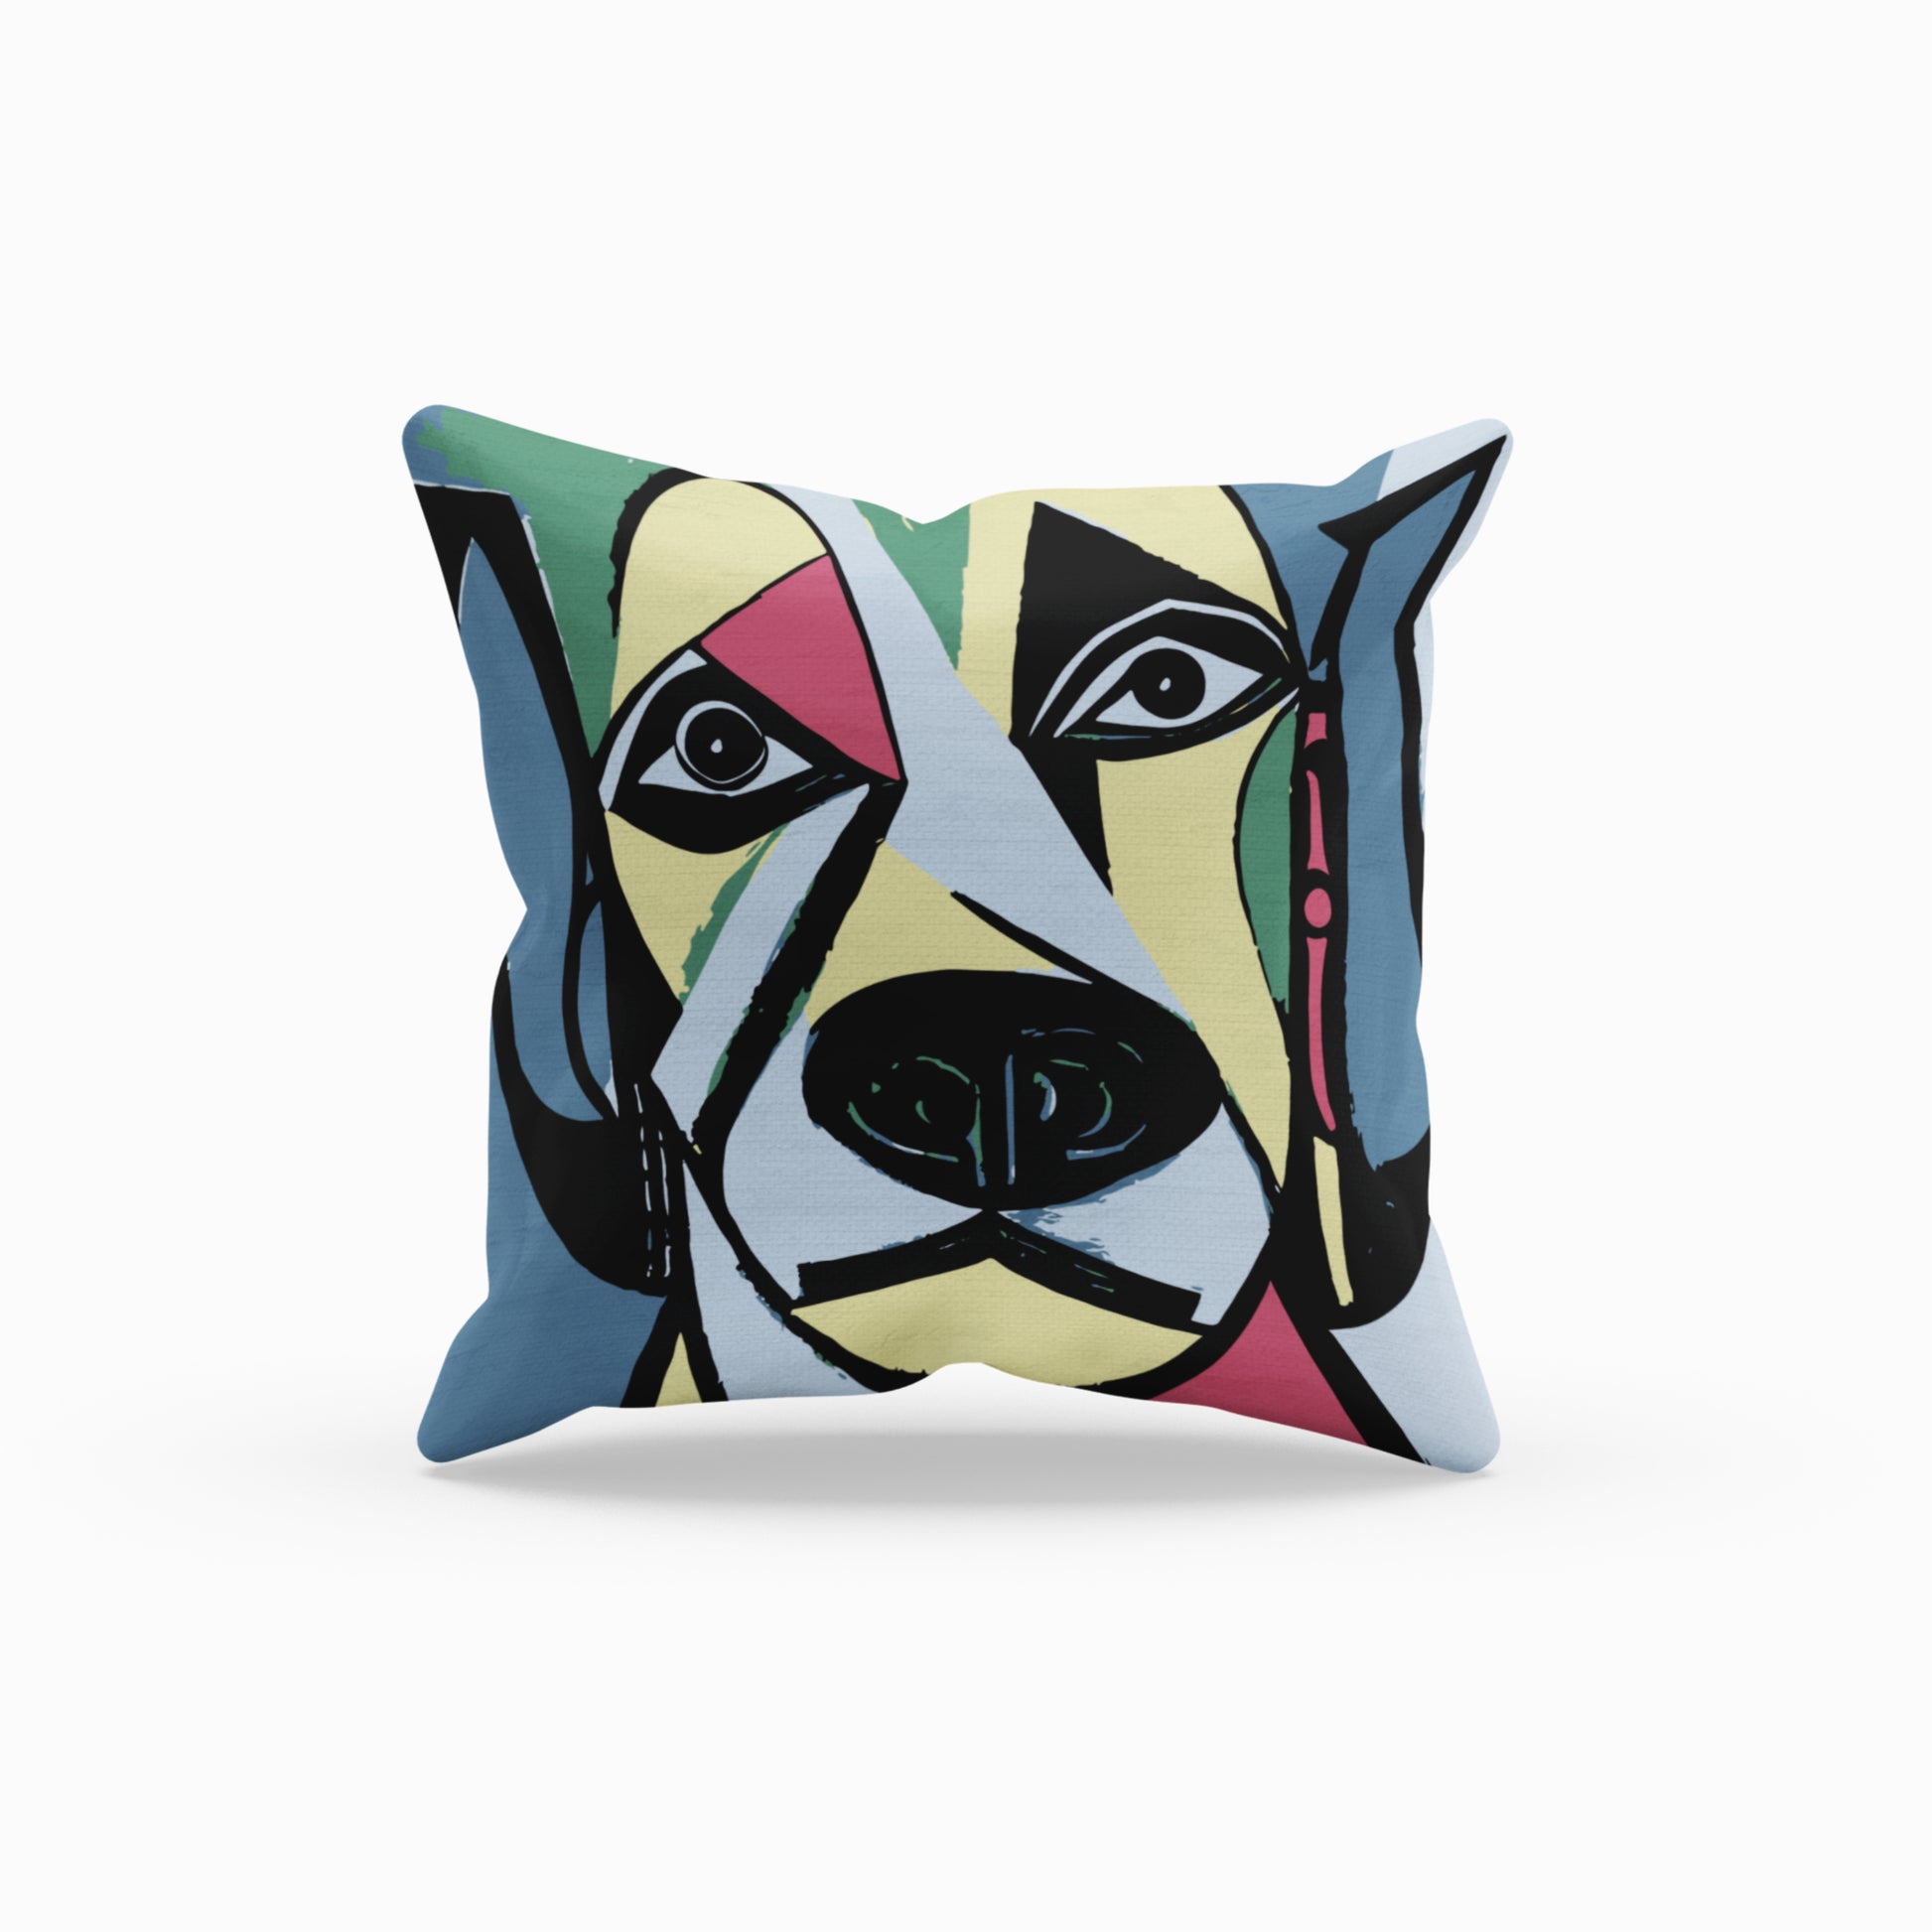 Charming Dog Art Decorative Throw Pillow